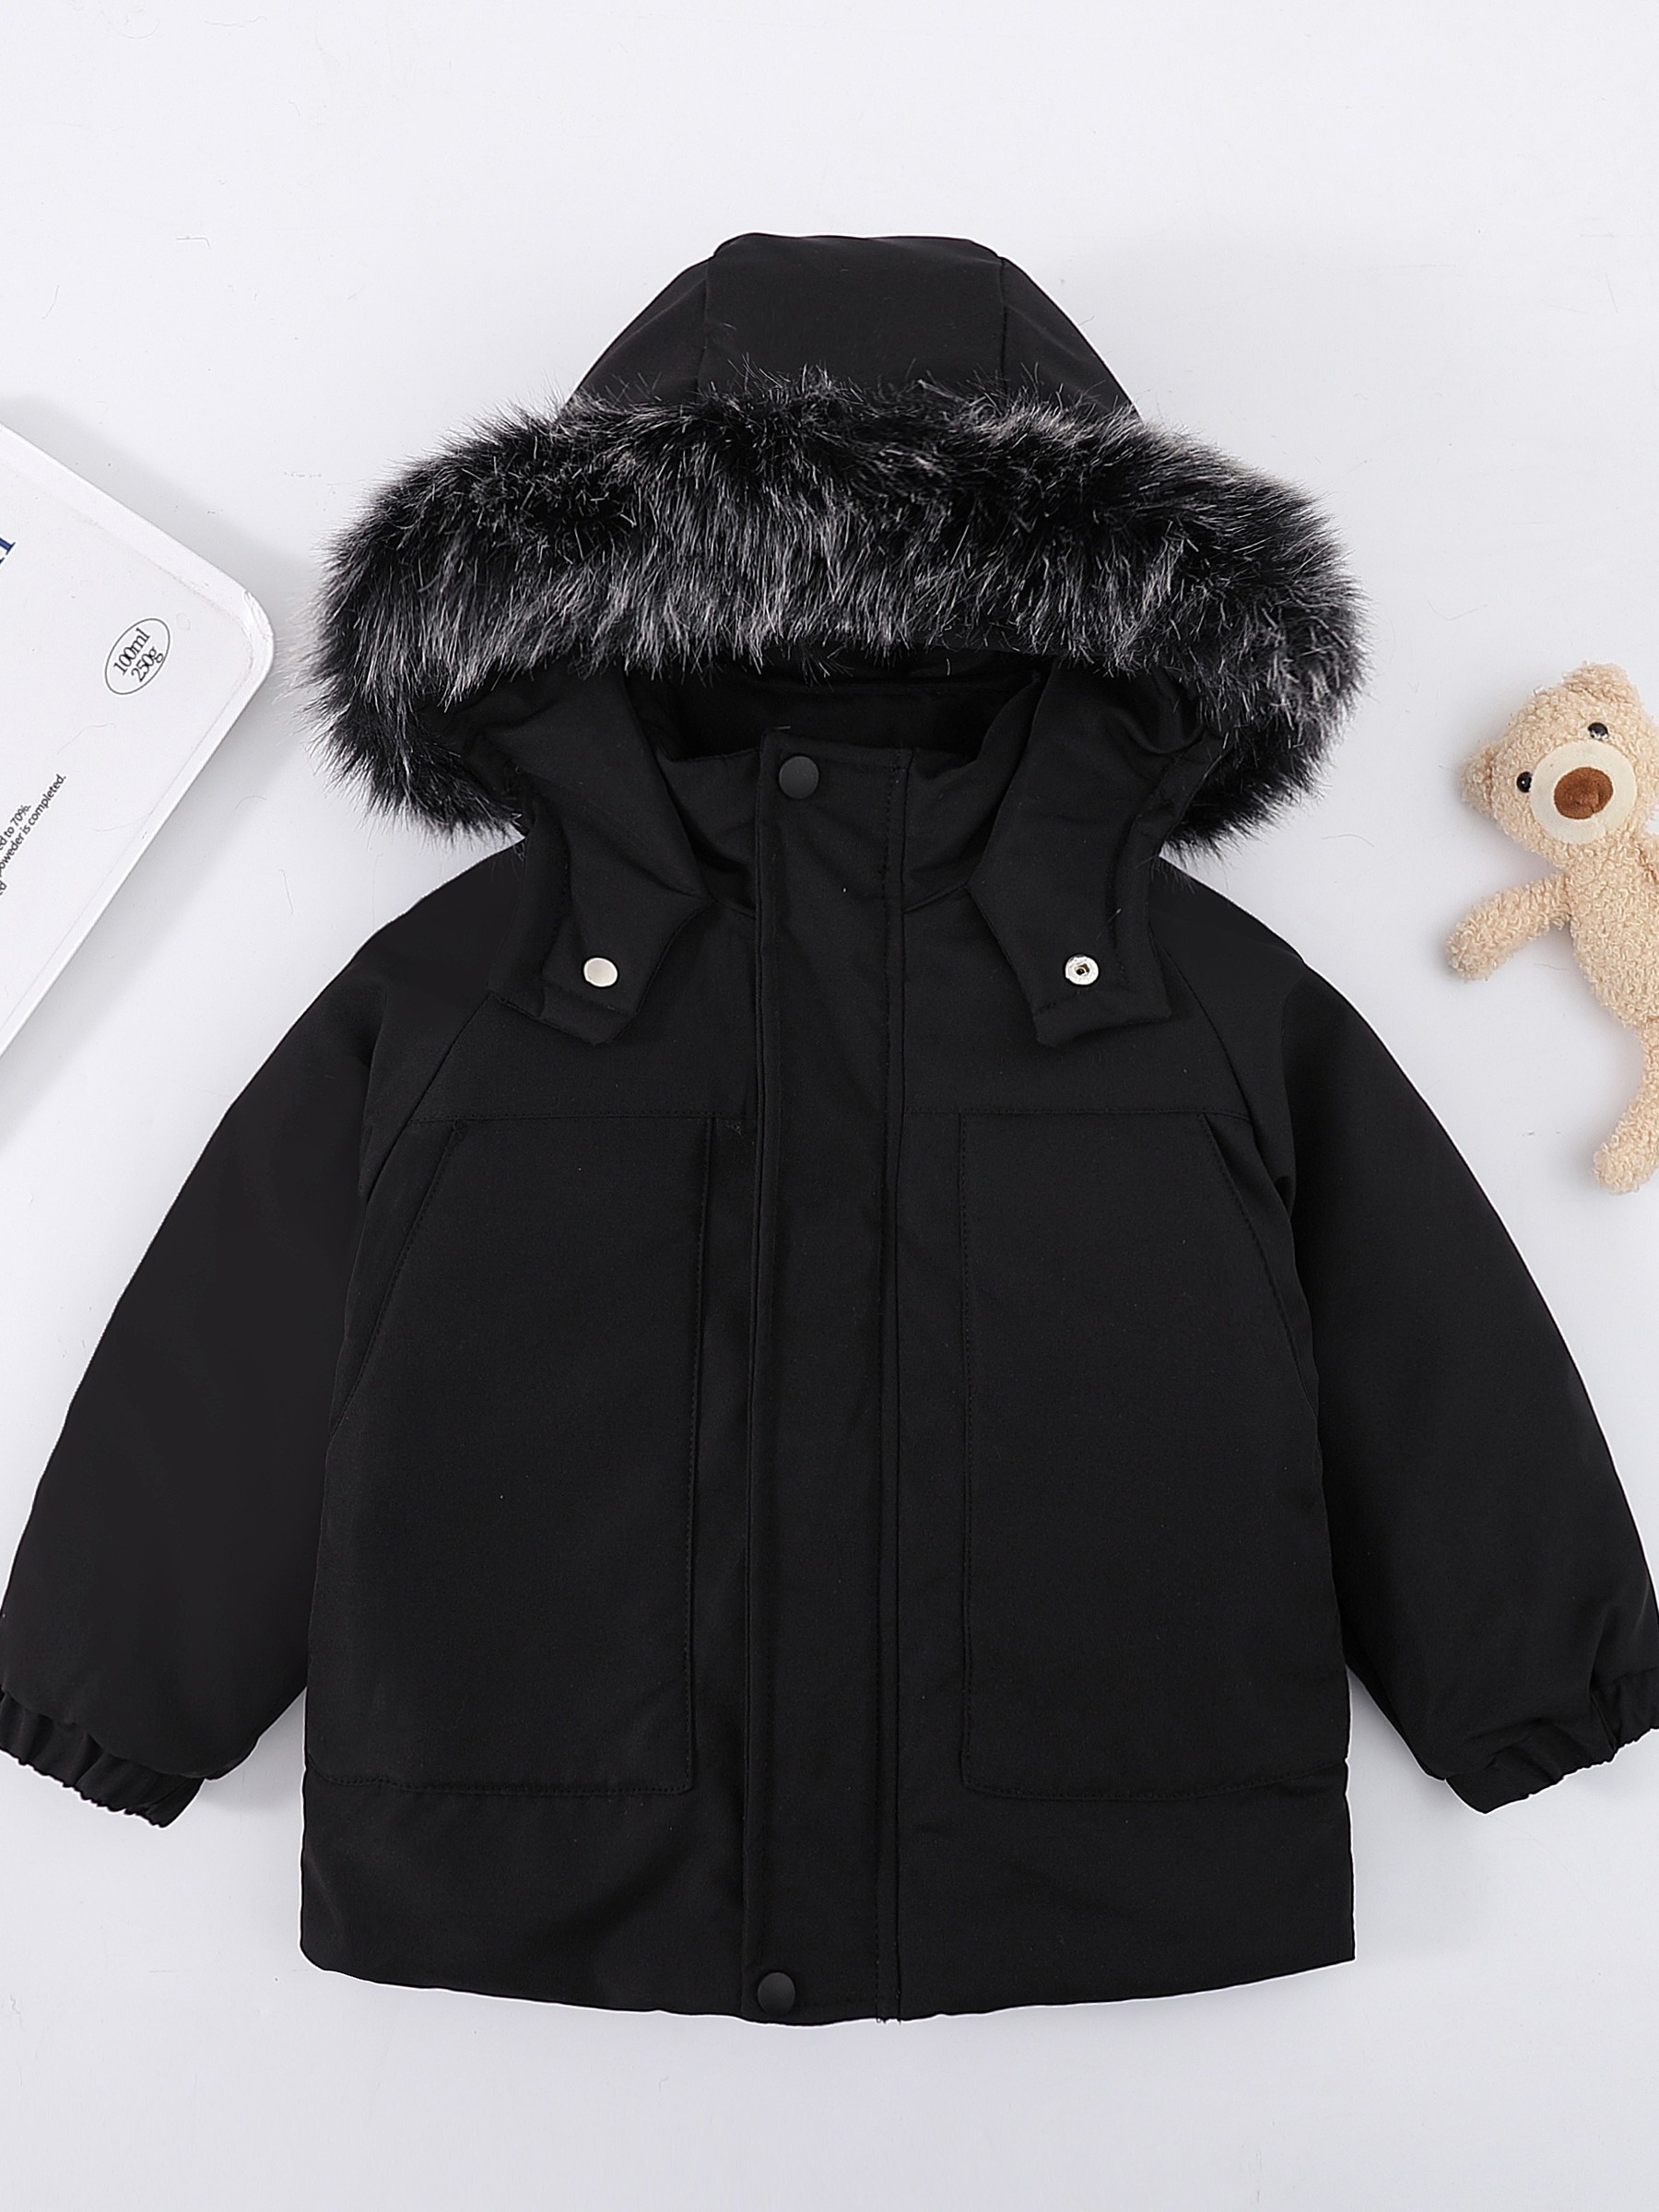 Ropa de abrigo para niños: chaqueta acolchada, esquí y más